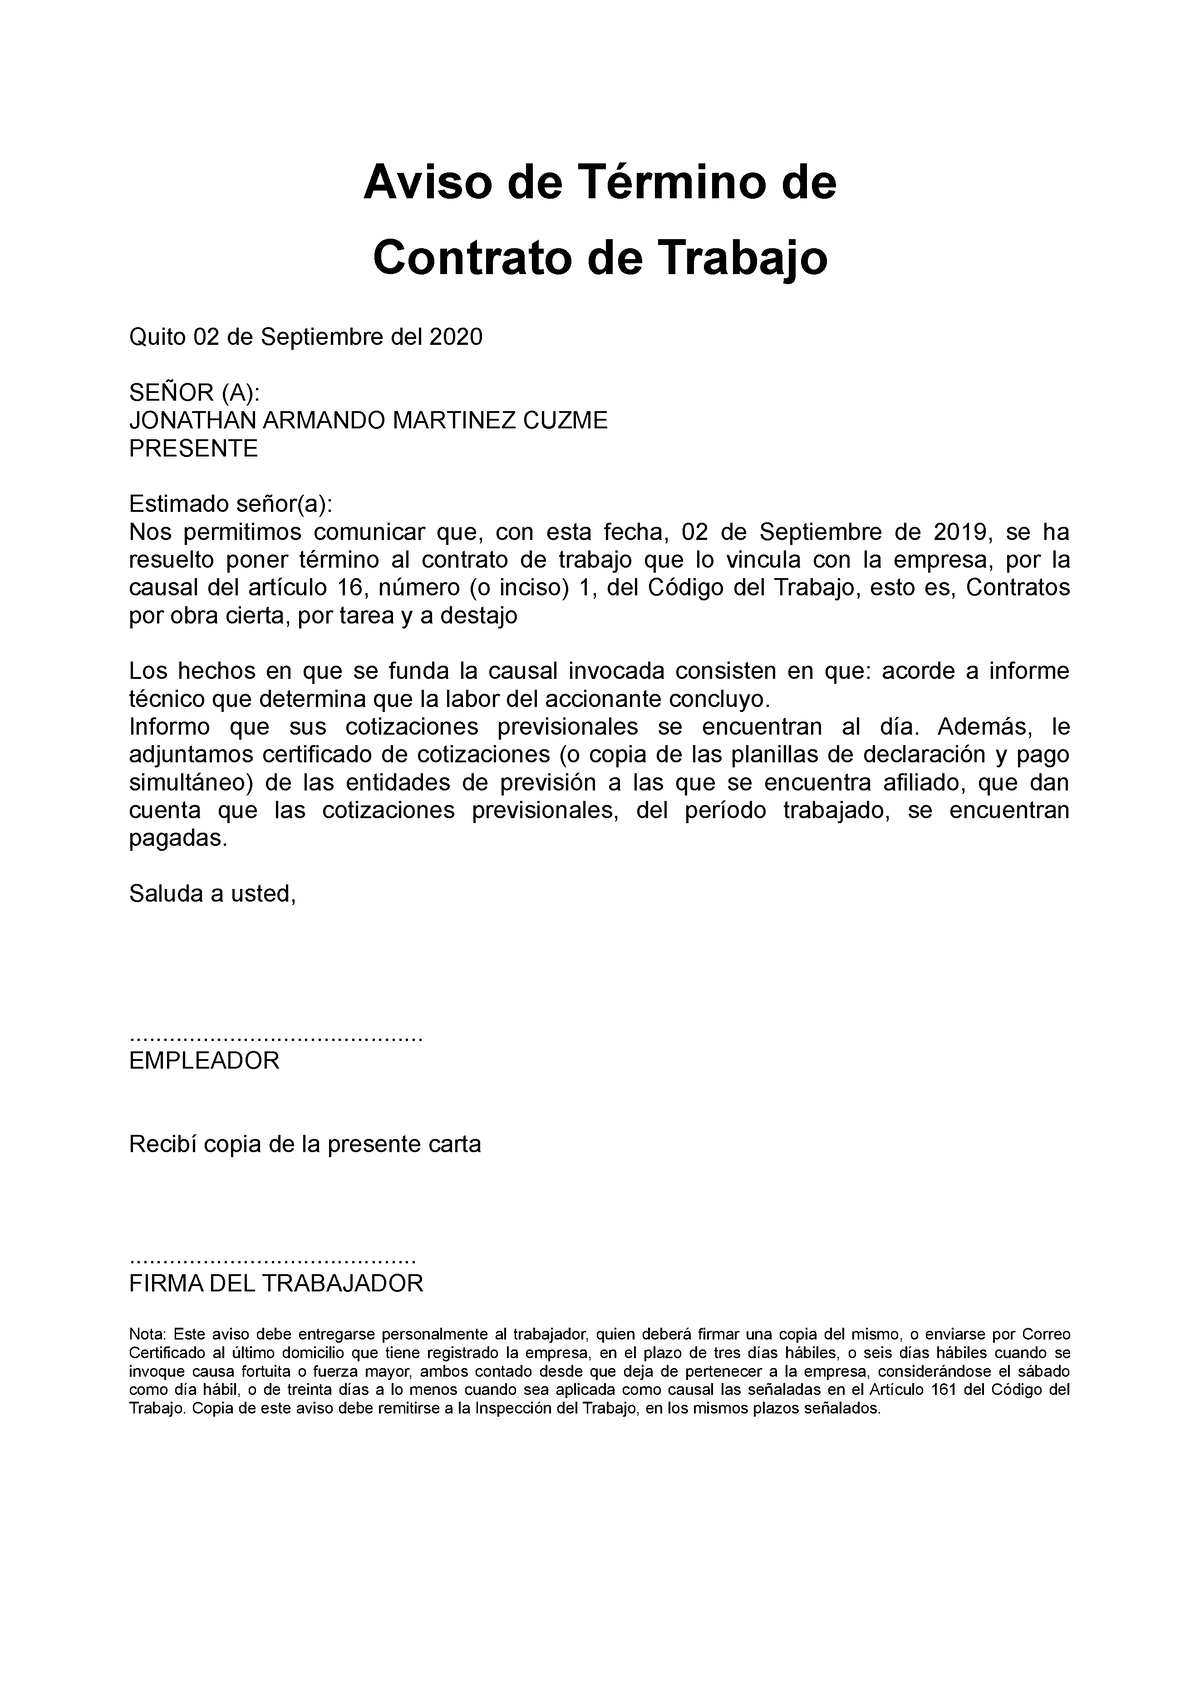 Aviso termino de contrato Aviso de Término de Contrato de Trabajo Quito de Septiembre del